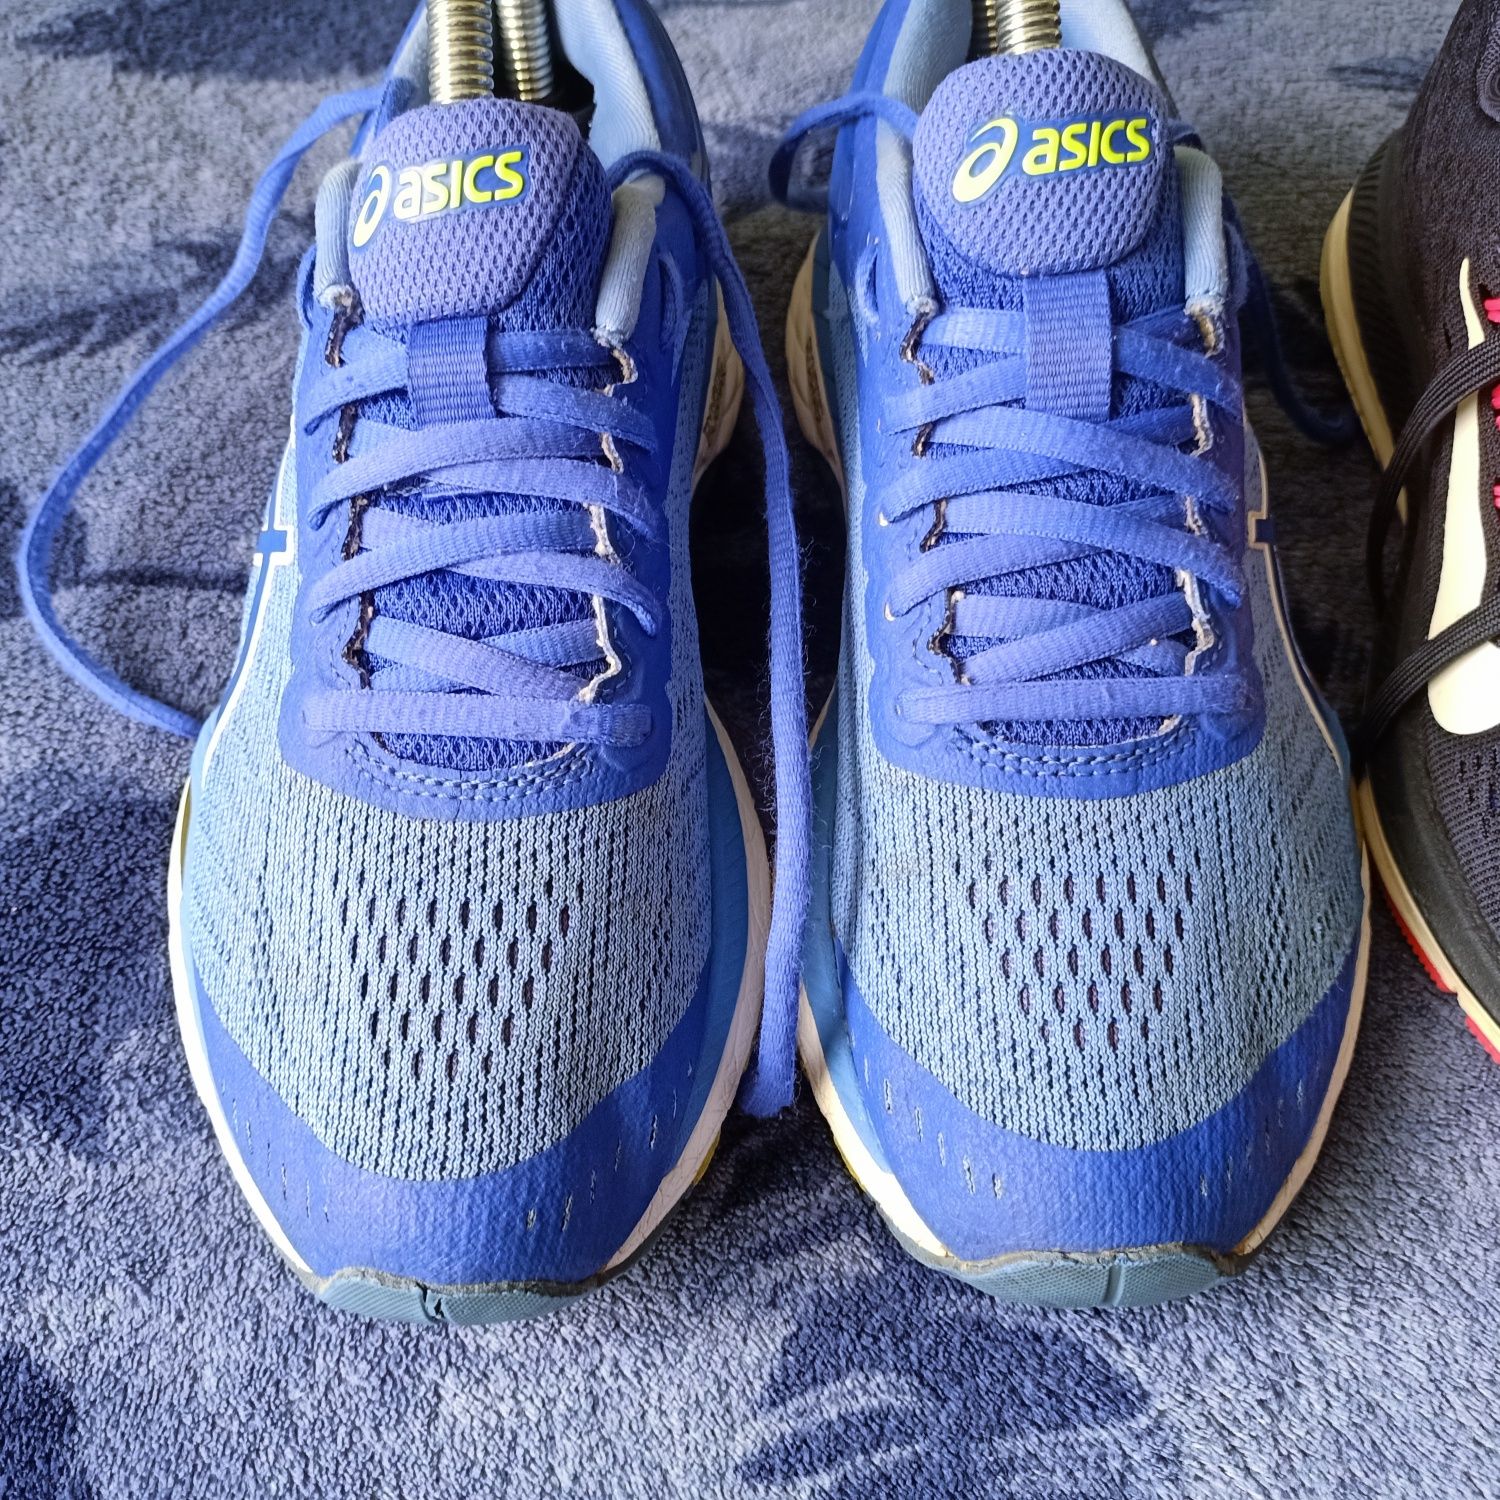 Trzy pary butów sportowych,  2 pary Nike i  , 1 para Asics  36-38